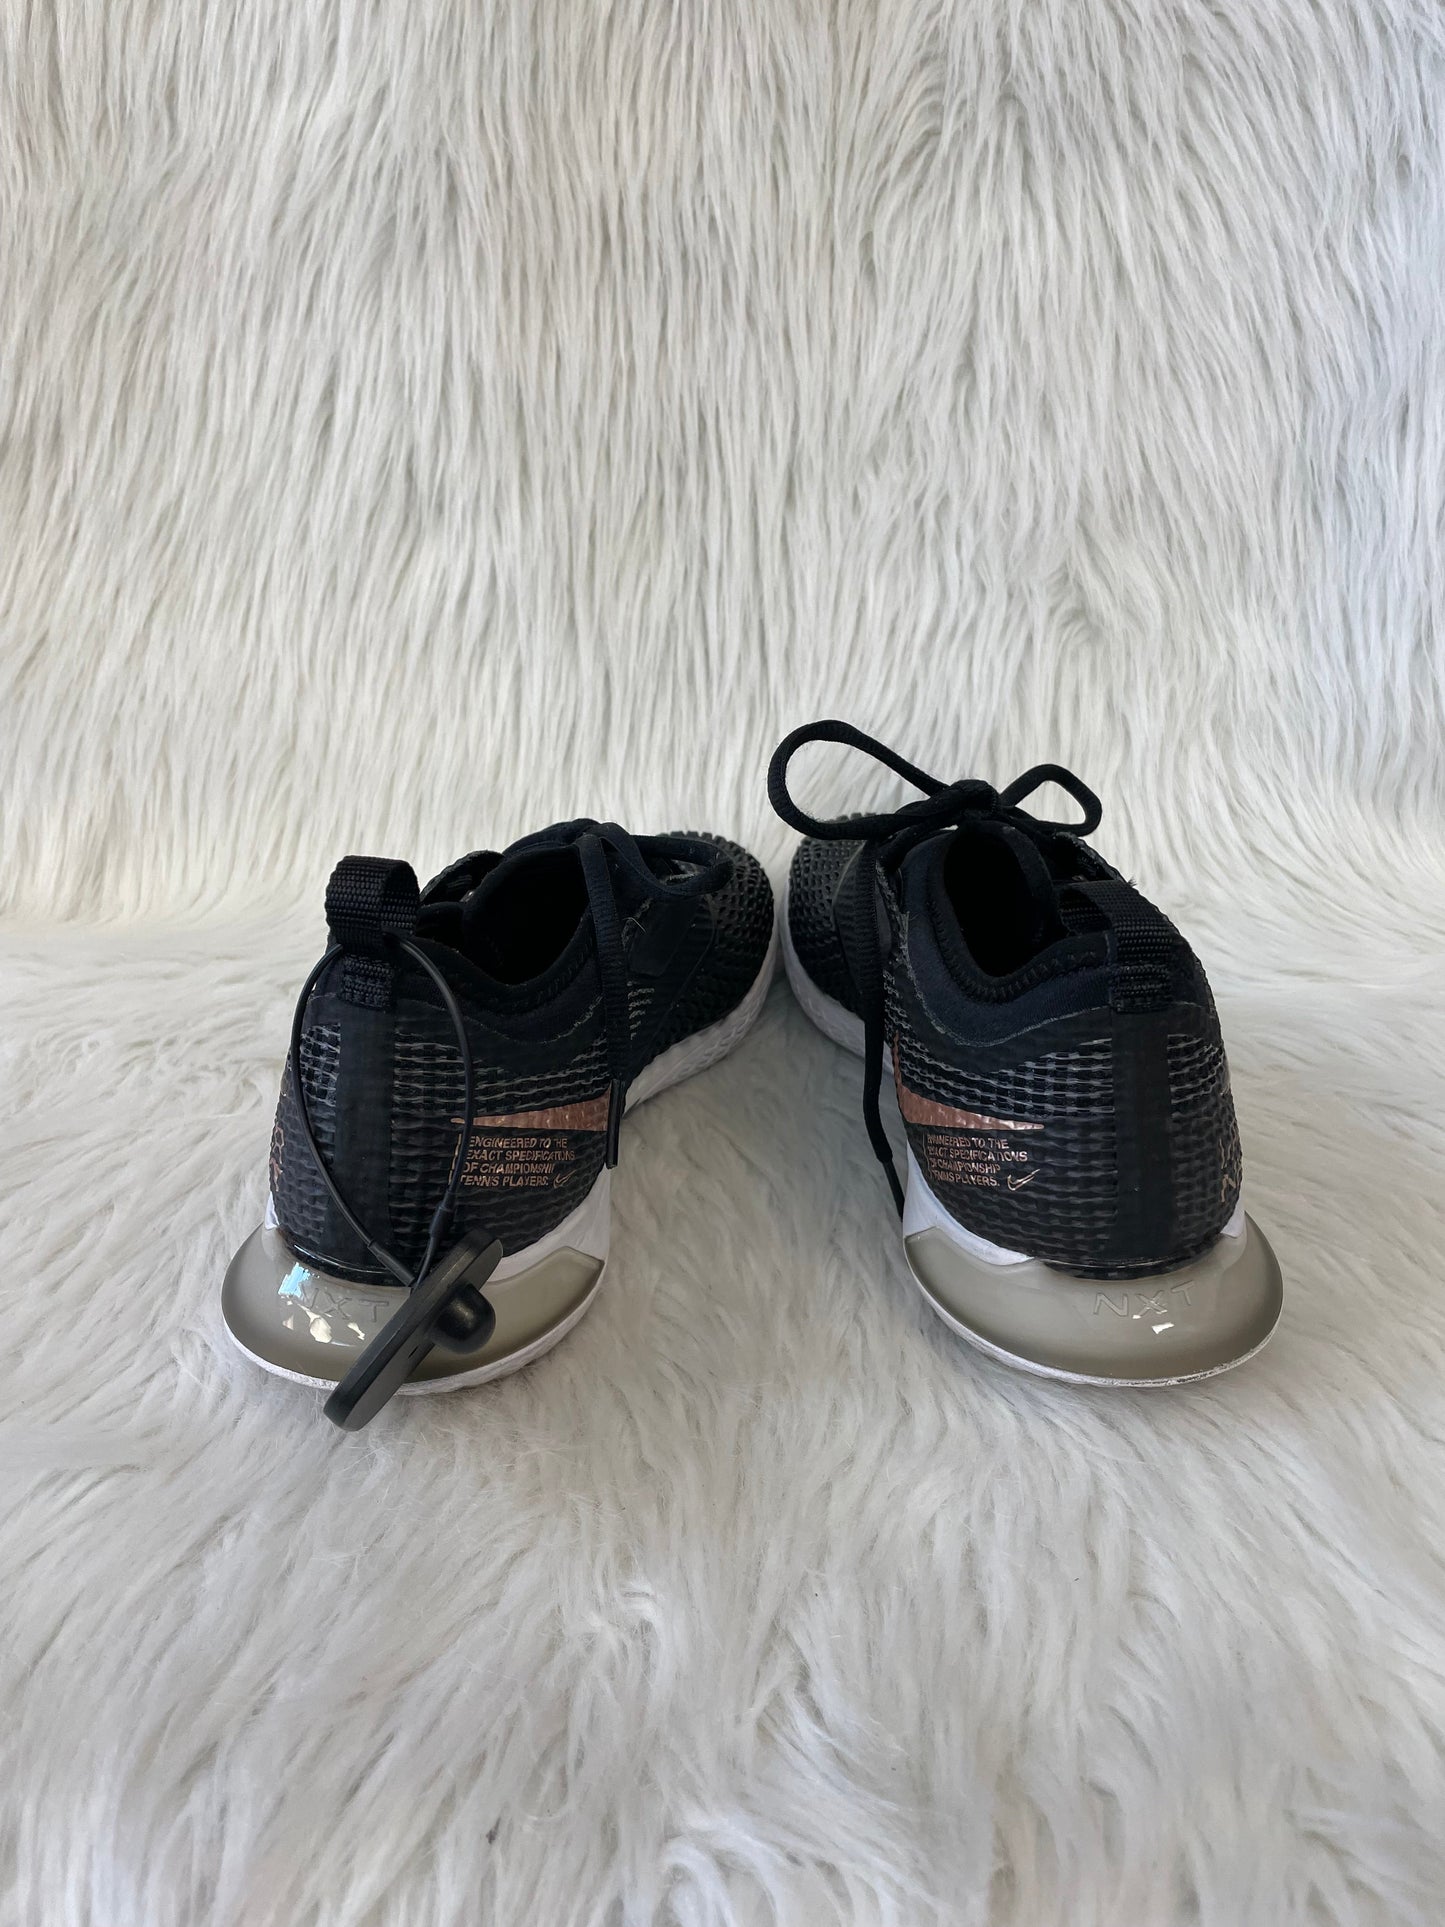 Black Shoes Athletic Nike, Size 11